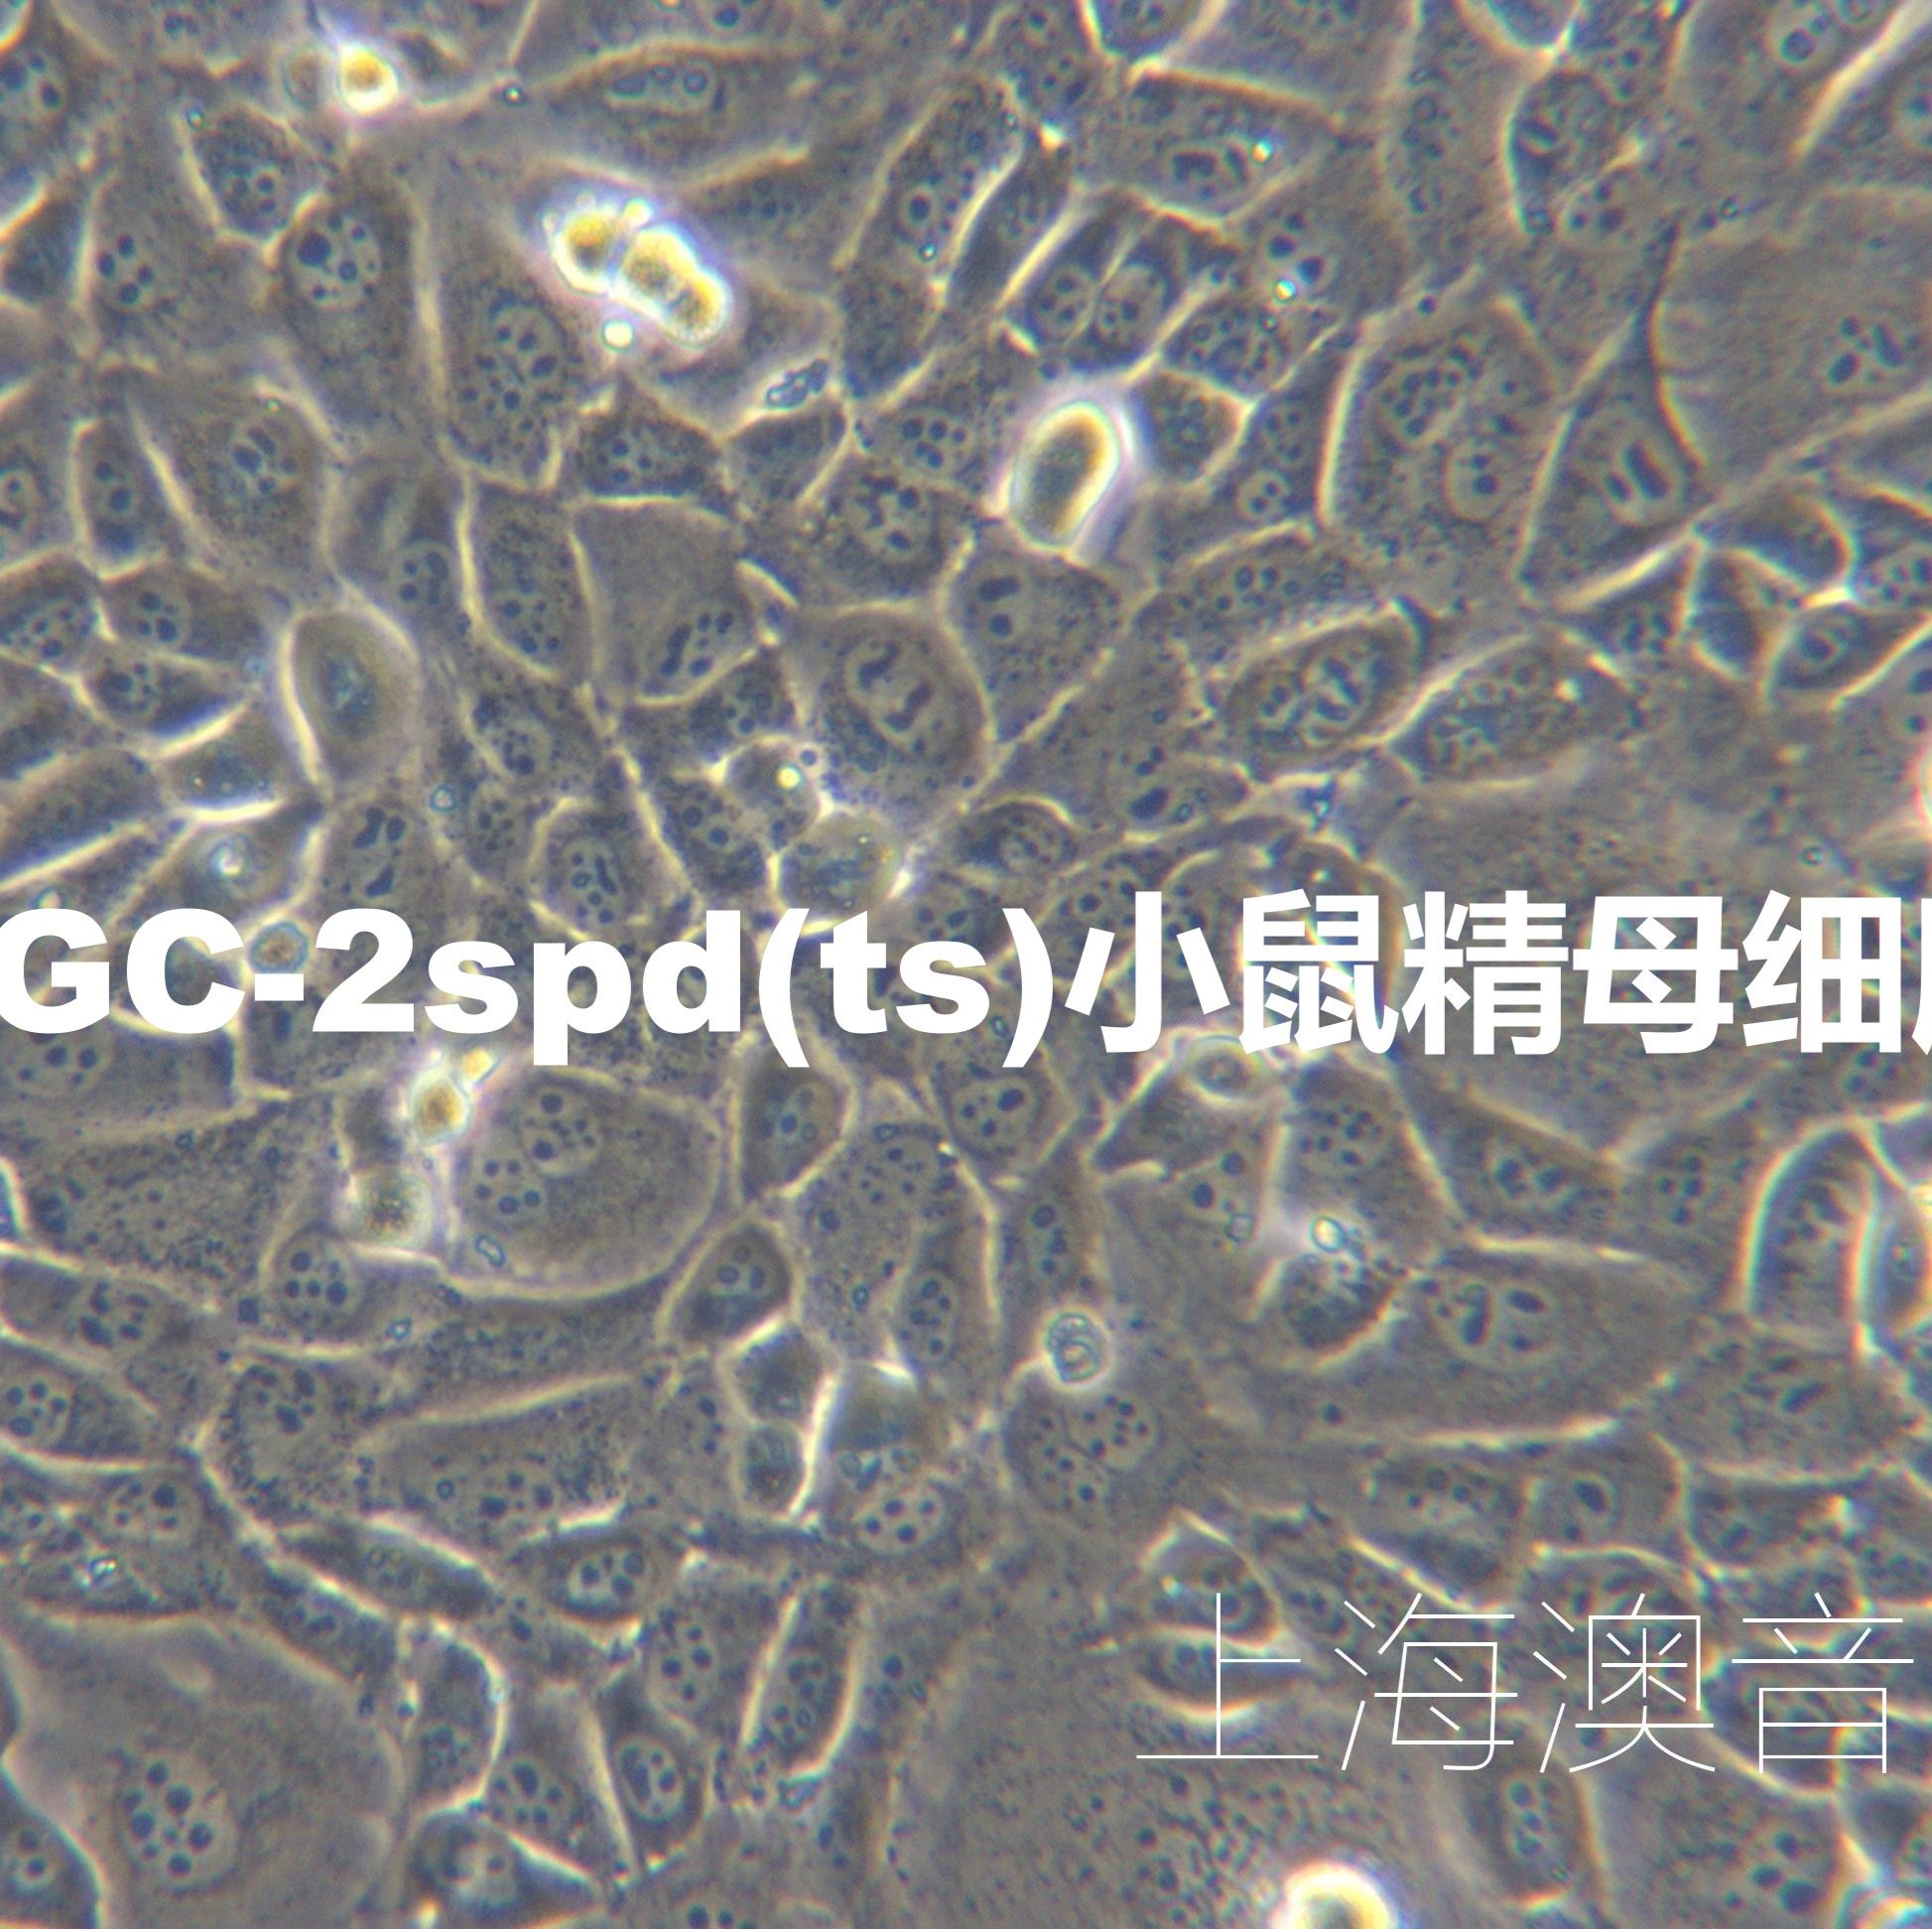 GC-2spd(ts)【GC-2】小鼠精母细胞